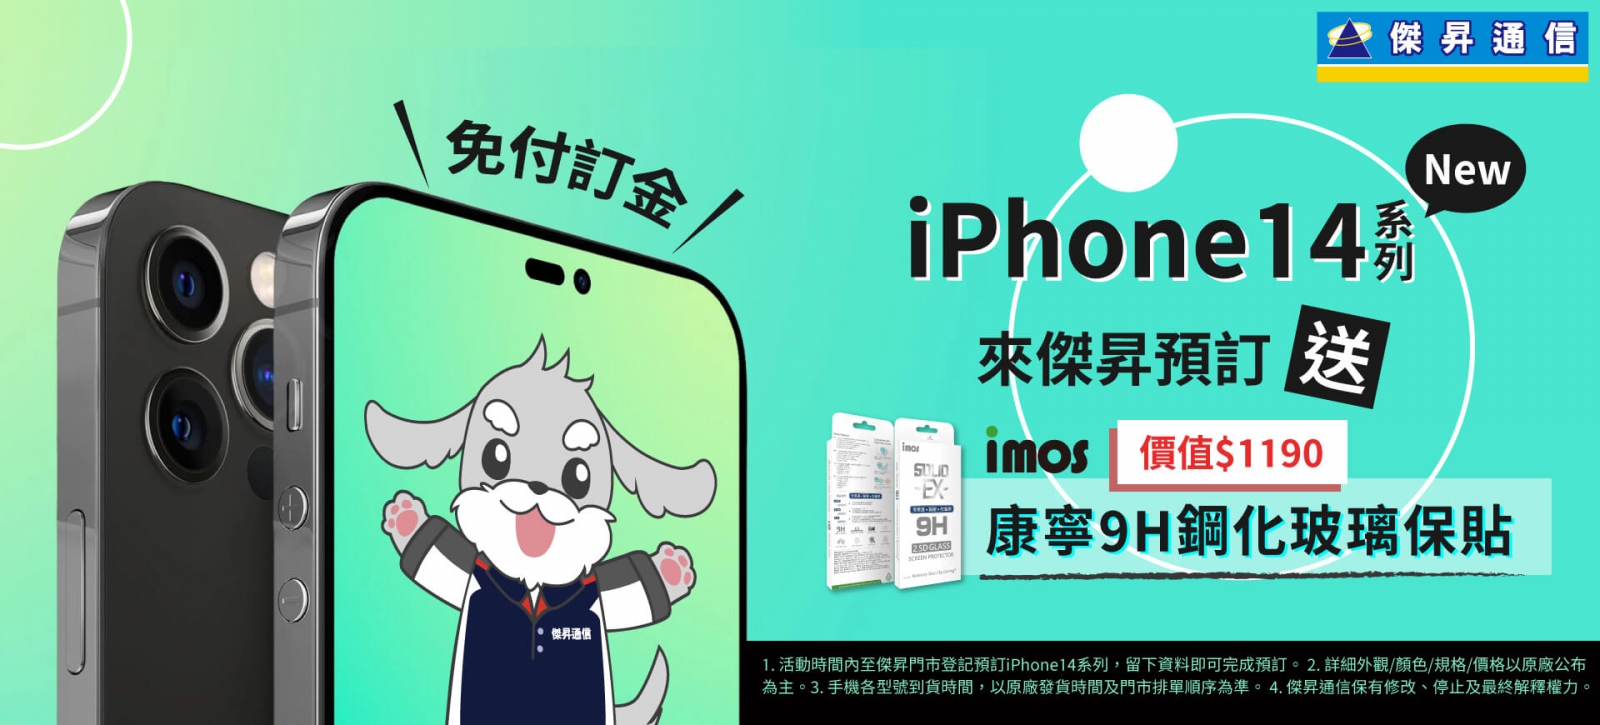 【購機技巧】蘋果iPhone 14新機預購優惠！免訂金+超值好禮送給你!